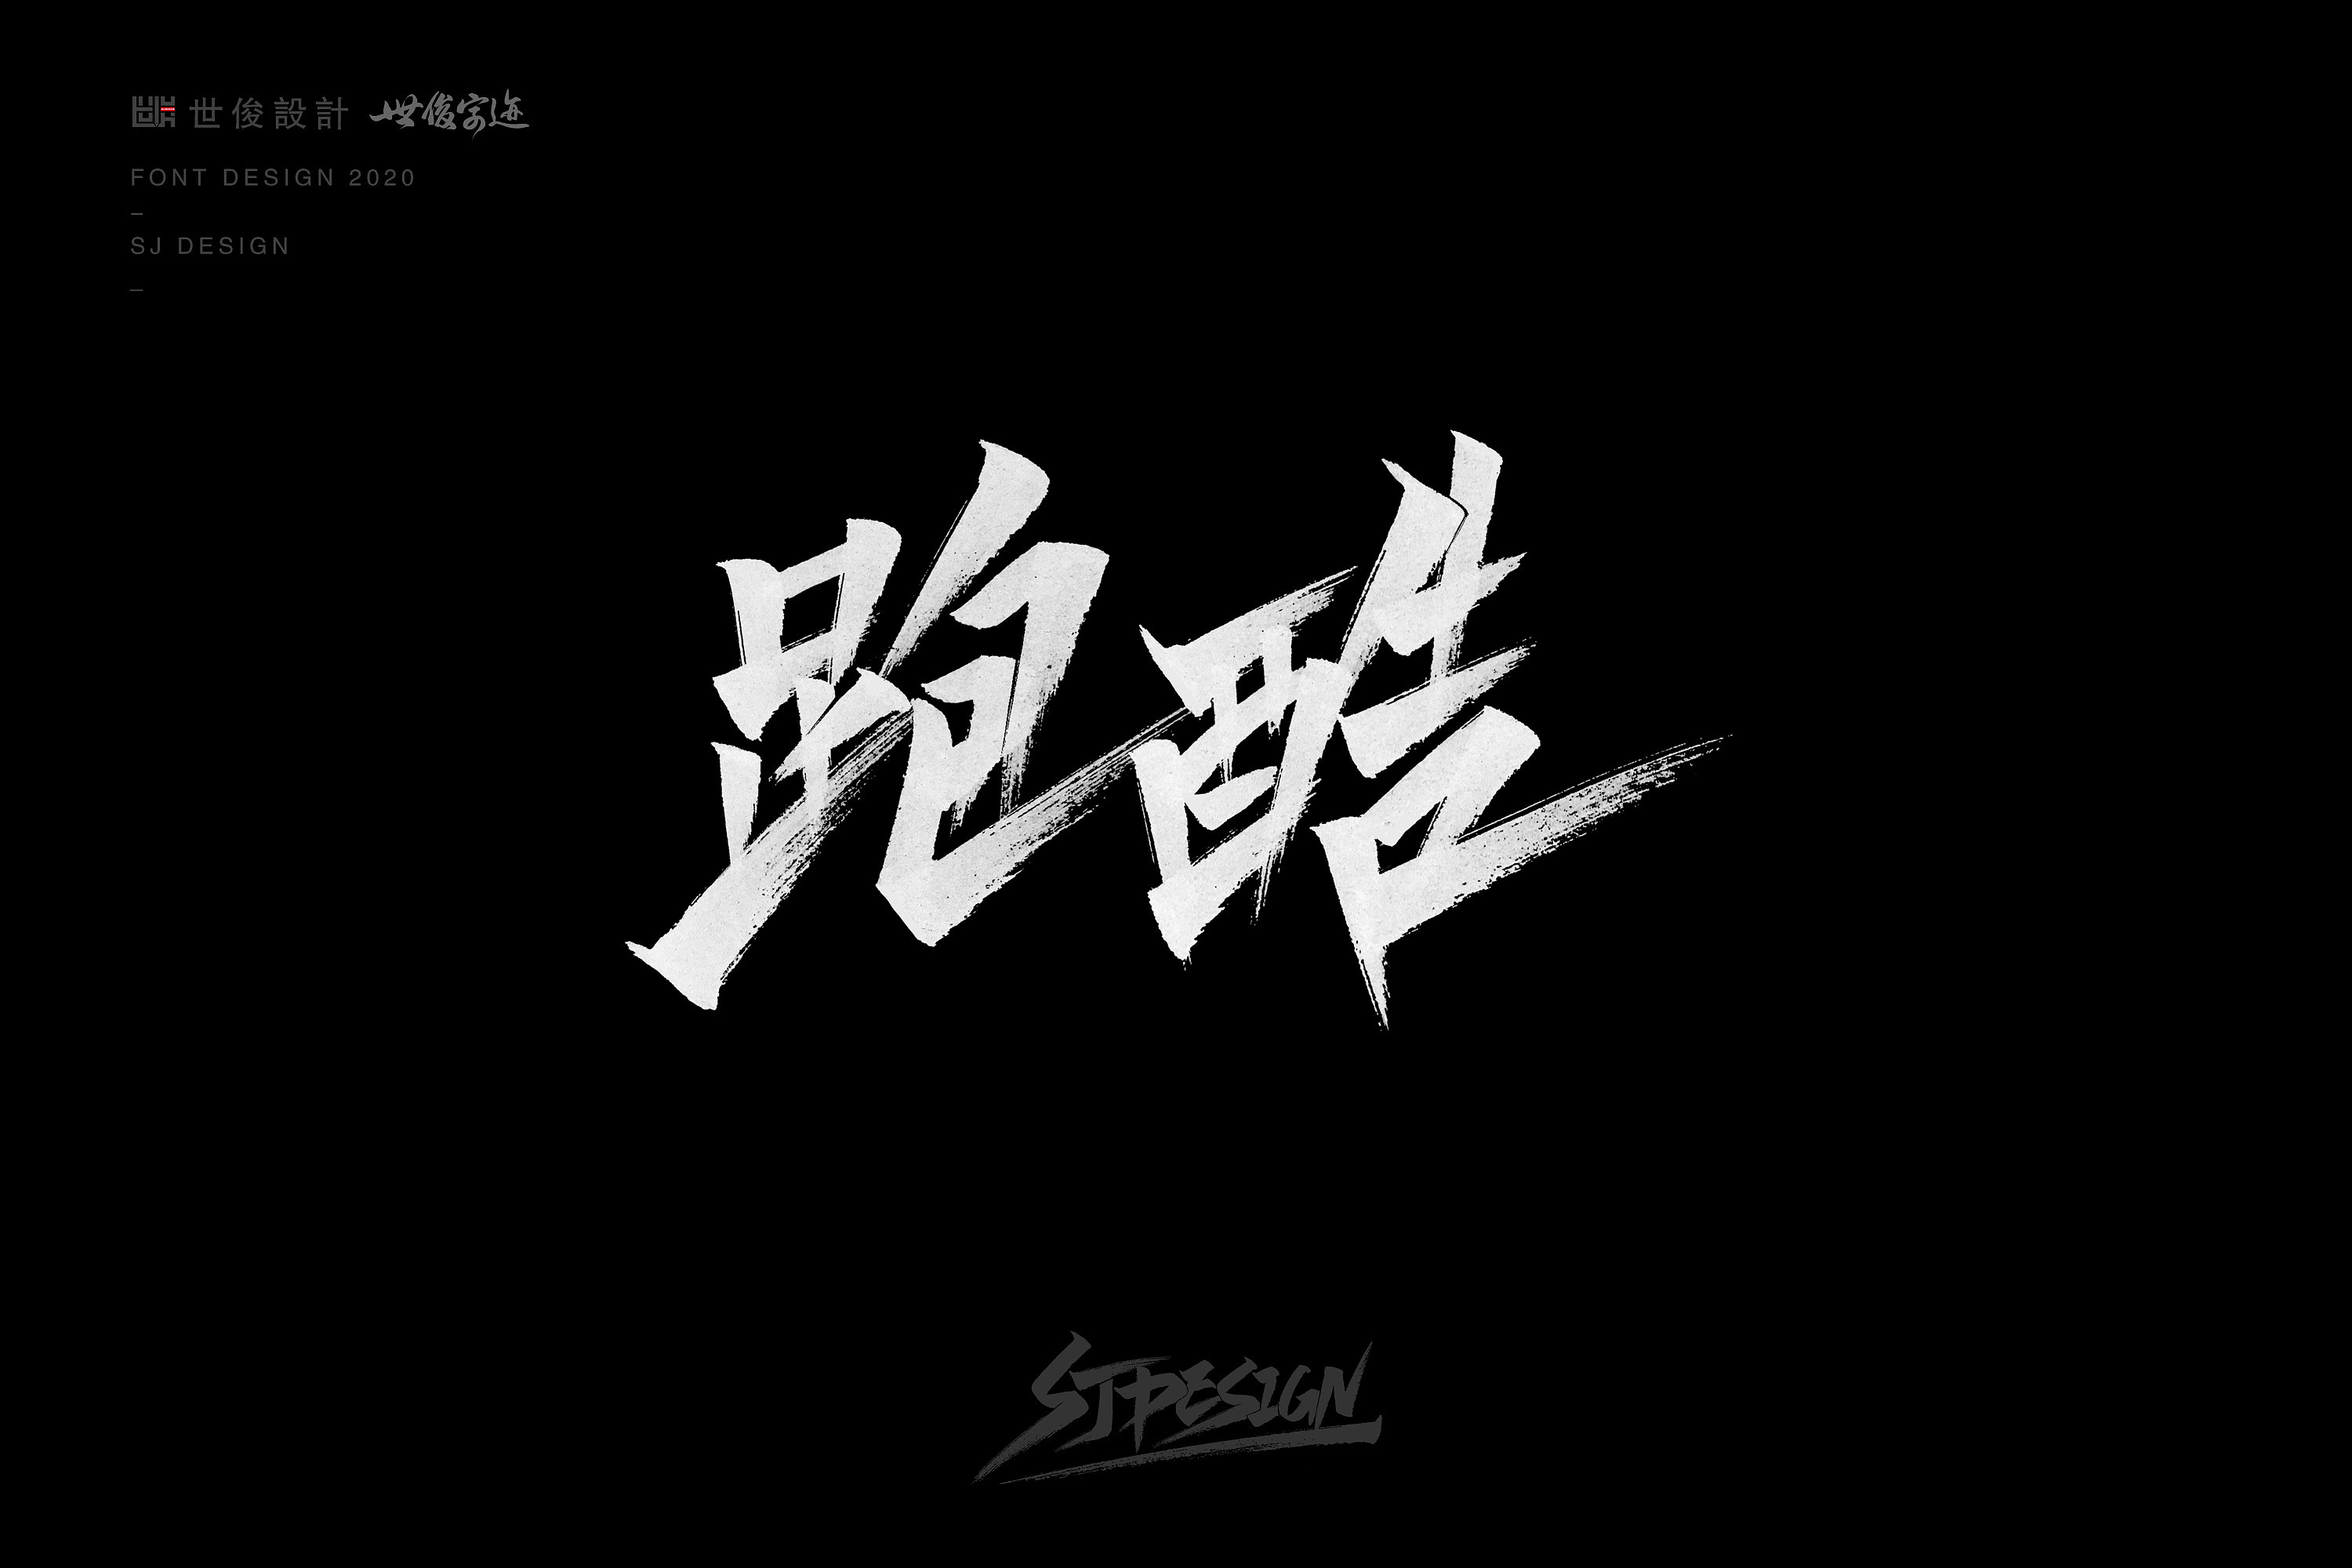 Chinese Creative Font Design-Handwritten handwriting 2020 – Free ...